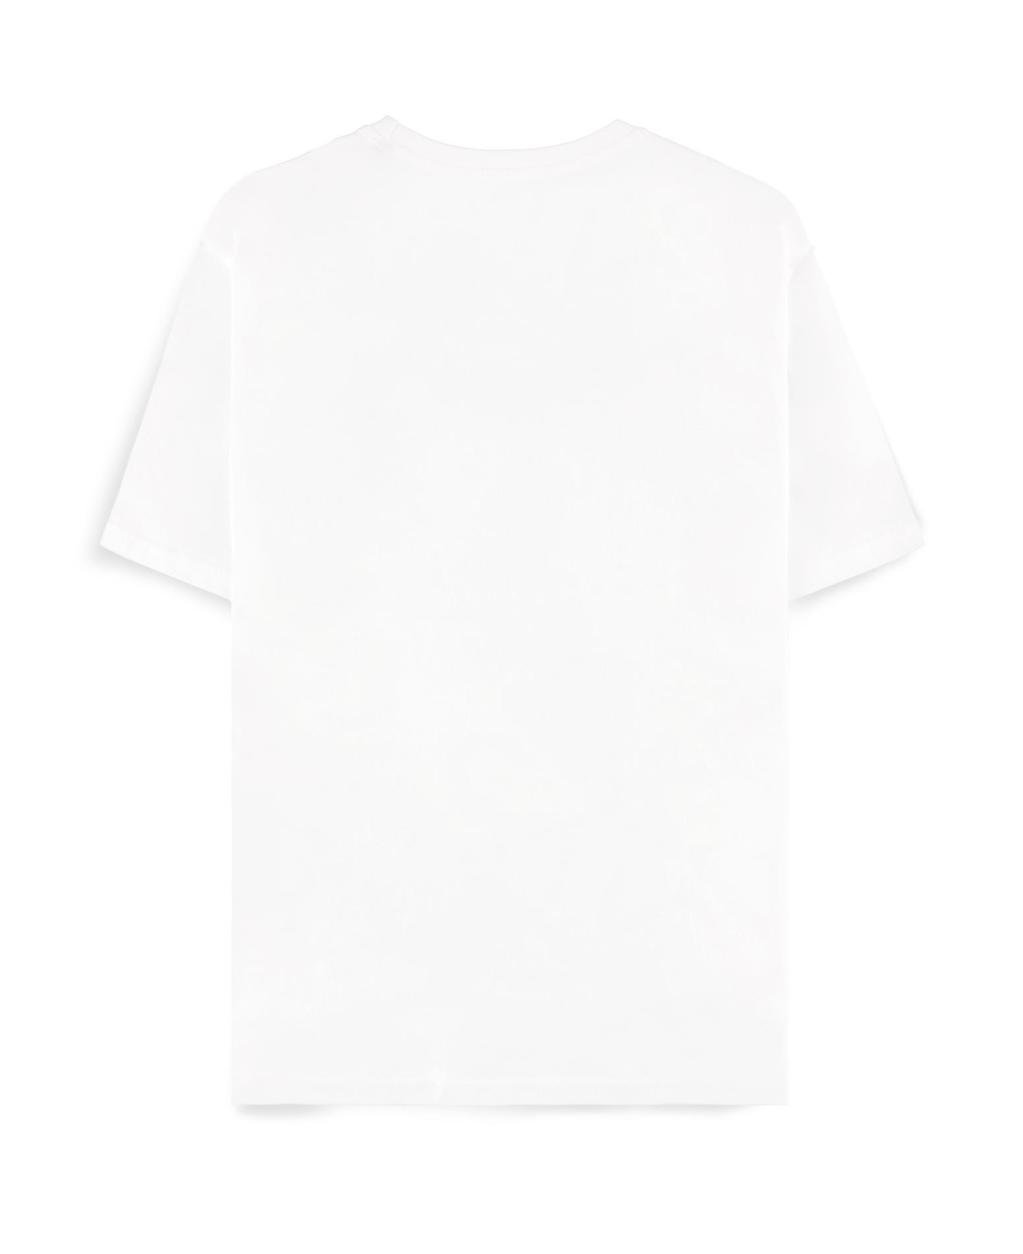 NARUTO Shippuden - Sasuke Symbol - Women's T-shirt (XL)